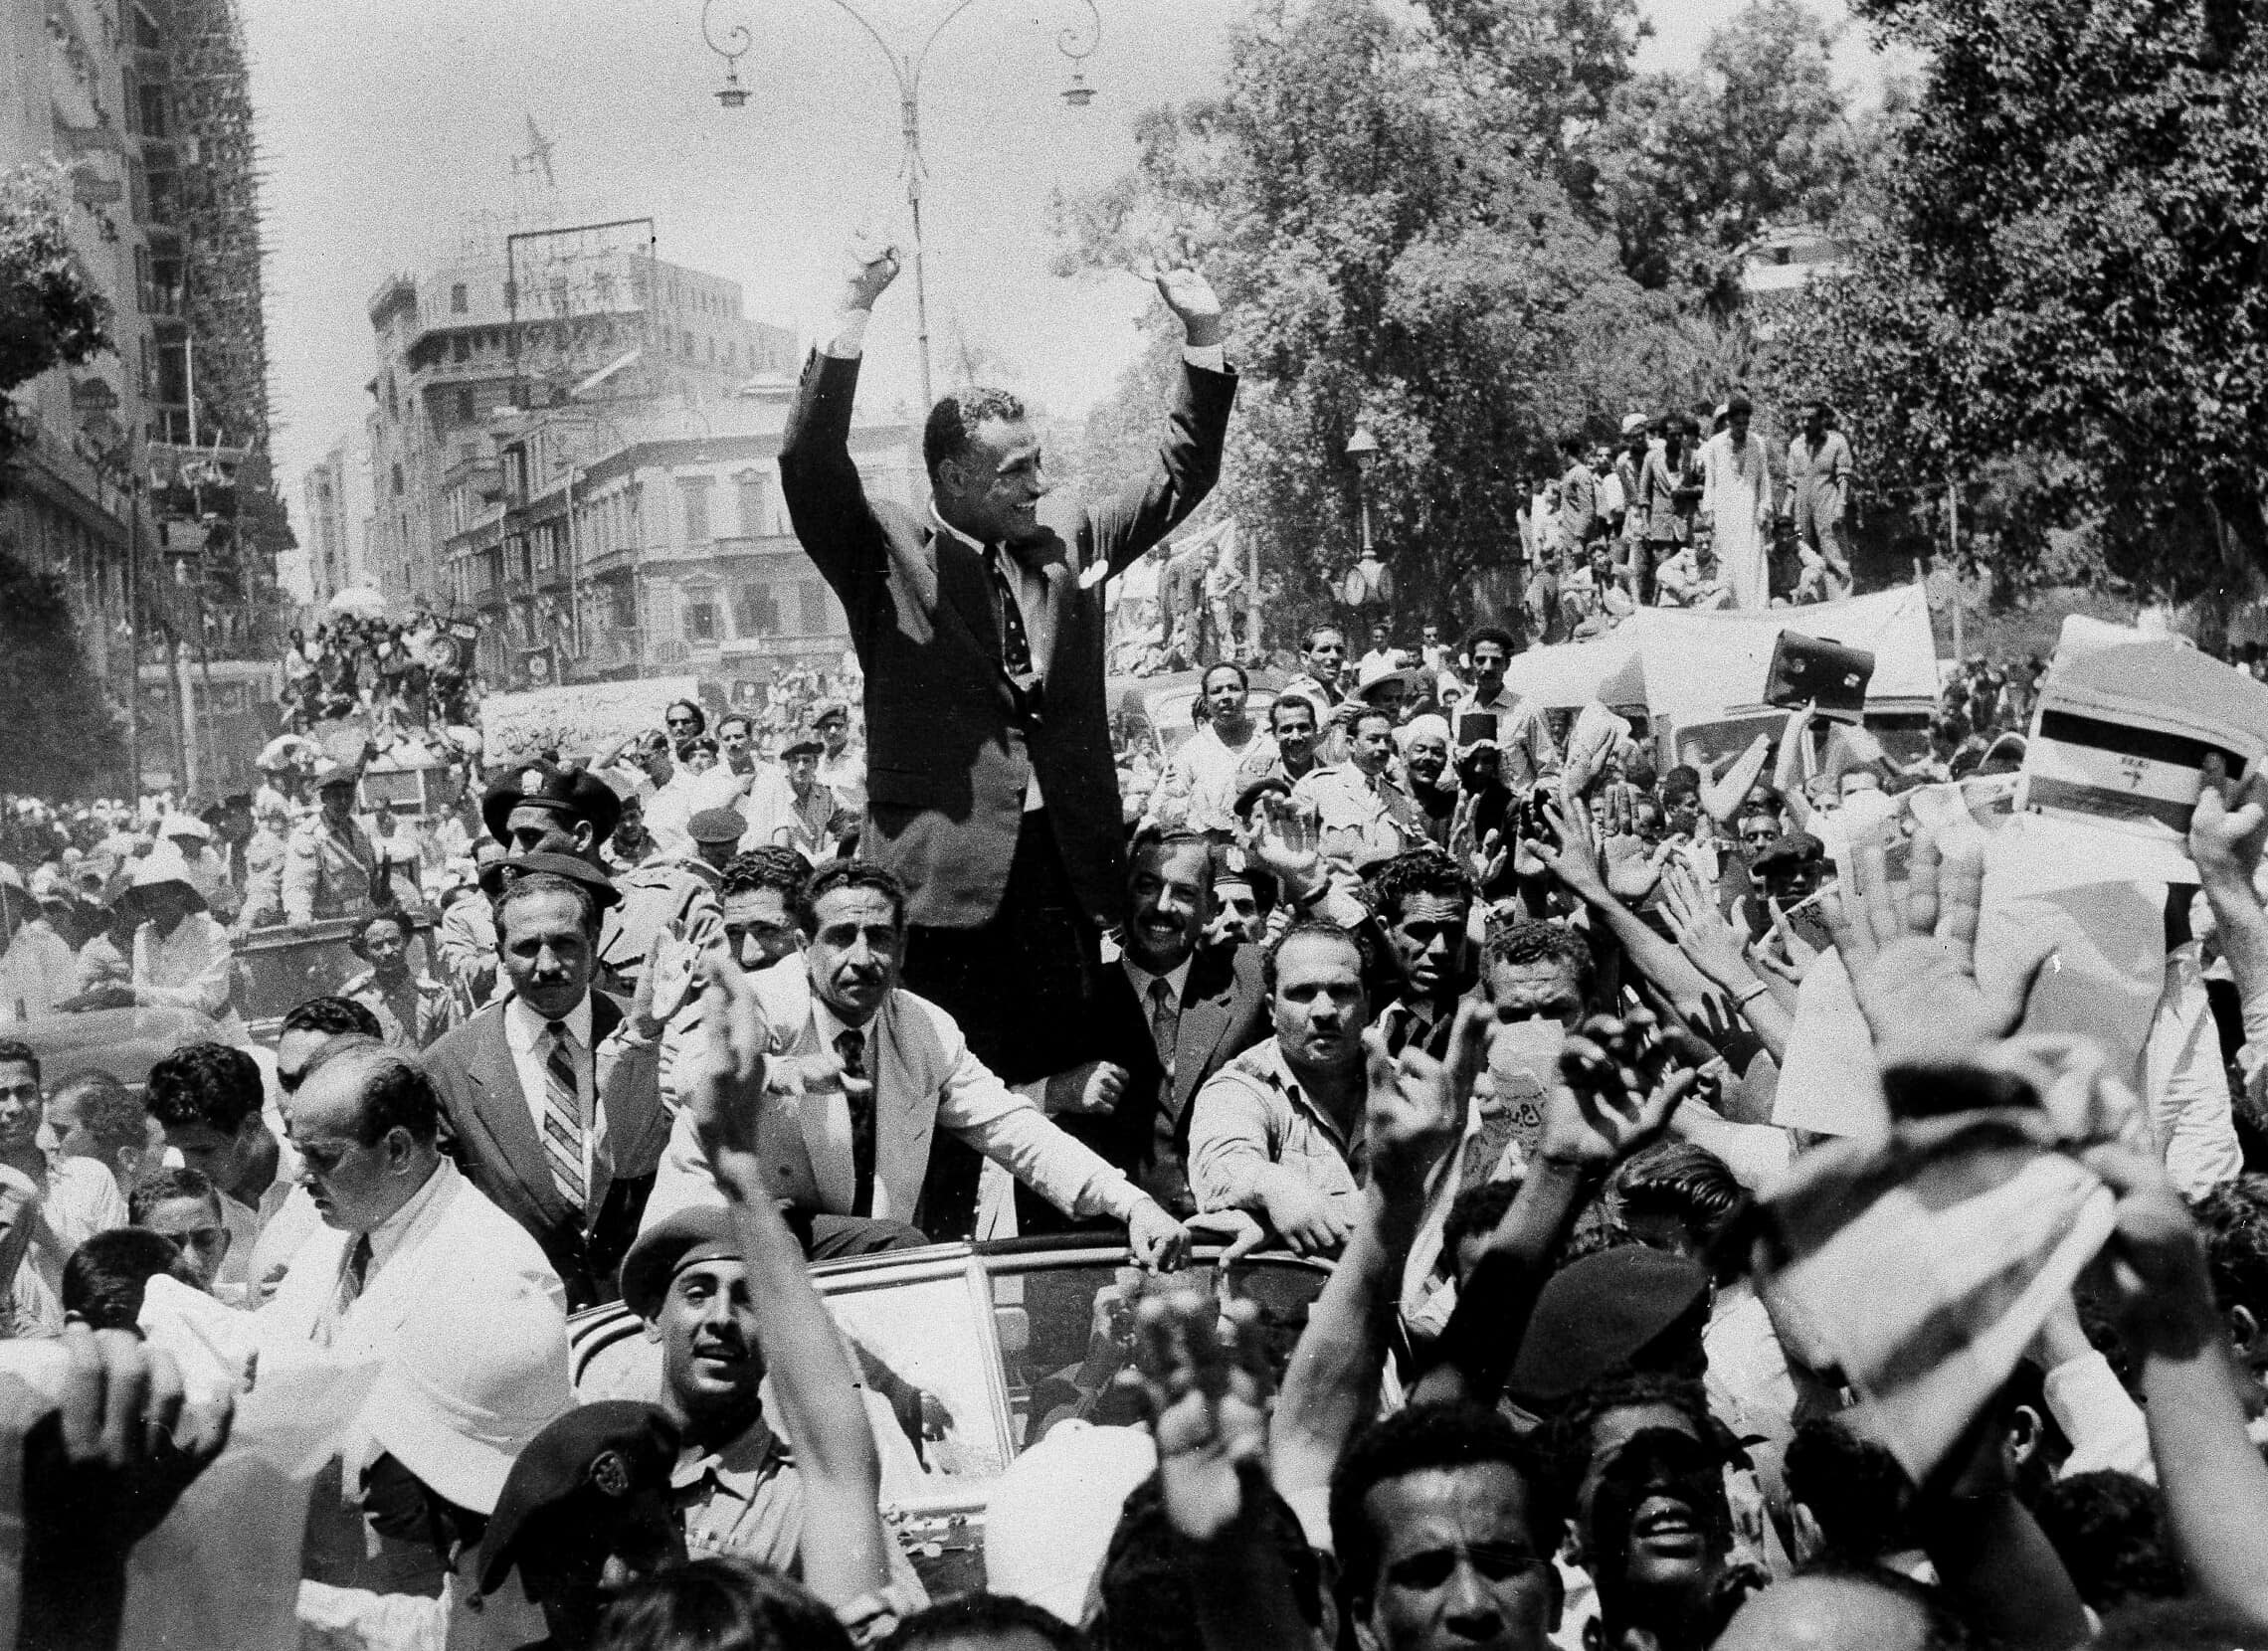 נשיא מצרים גמאל עבד אל נאצר מתקבל בתשואות ברחובות קהיר ב-28 ביולי 1956, בעקבות הכרזתו על הלאמת תעלת סואץ (צילום: AP Photo)